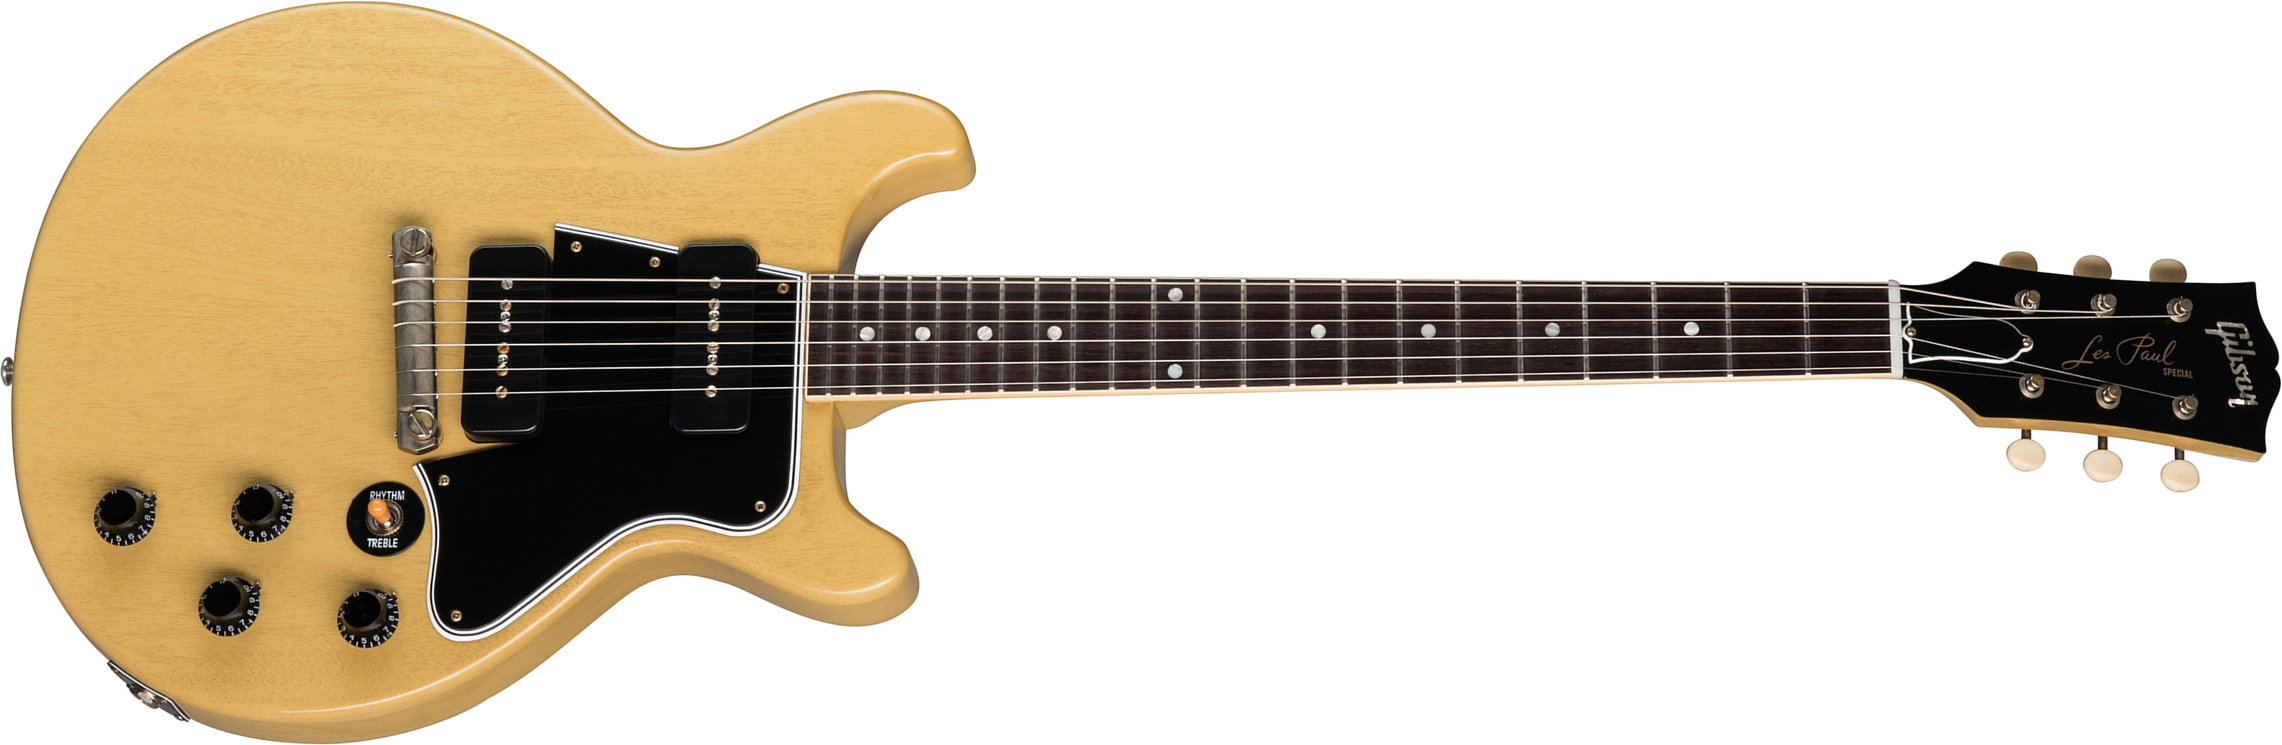 Gibson Custom Shop Les Paul Special 1960 Double Cut Reissue 2p90 Ht Rw - Vos Tv Yellow - Guitarra eléctrica de corte único. - Main picture